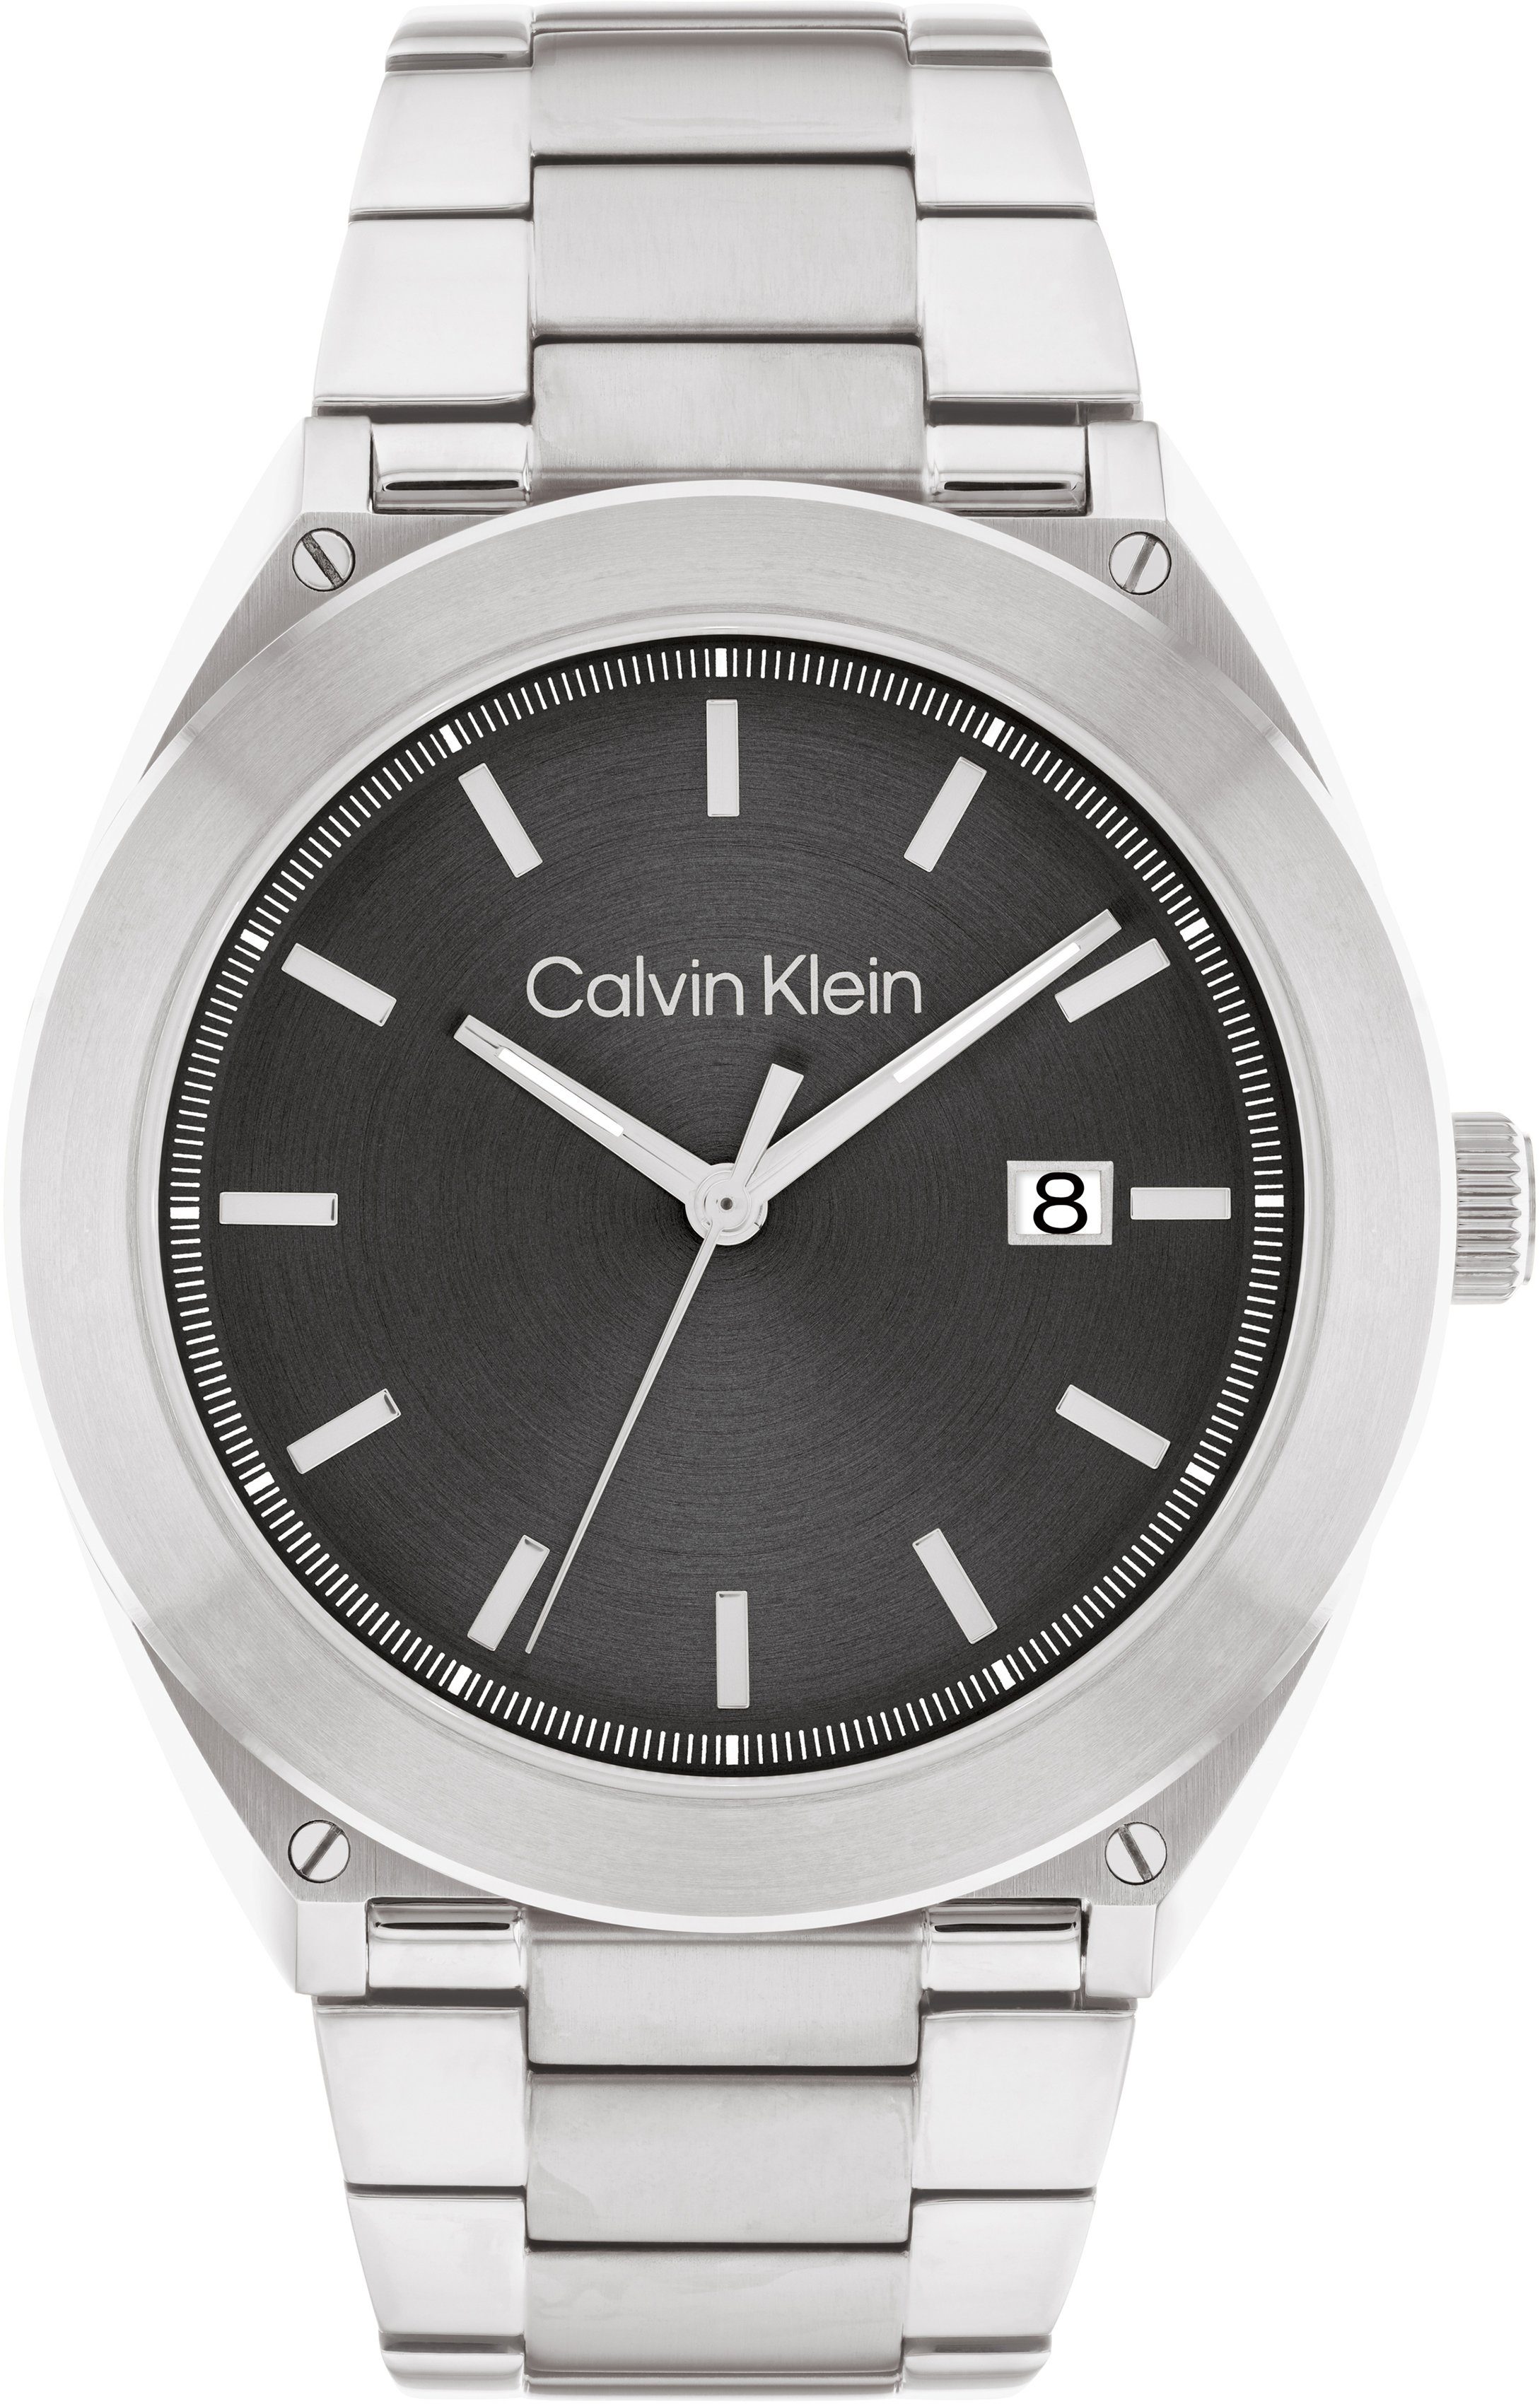 Calvin Klein Quarzuhr CASUAL ESSENTIALS, 25200196, Armbanduhr, Herrenuhr, Datum, Mineralglas